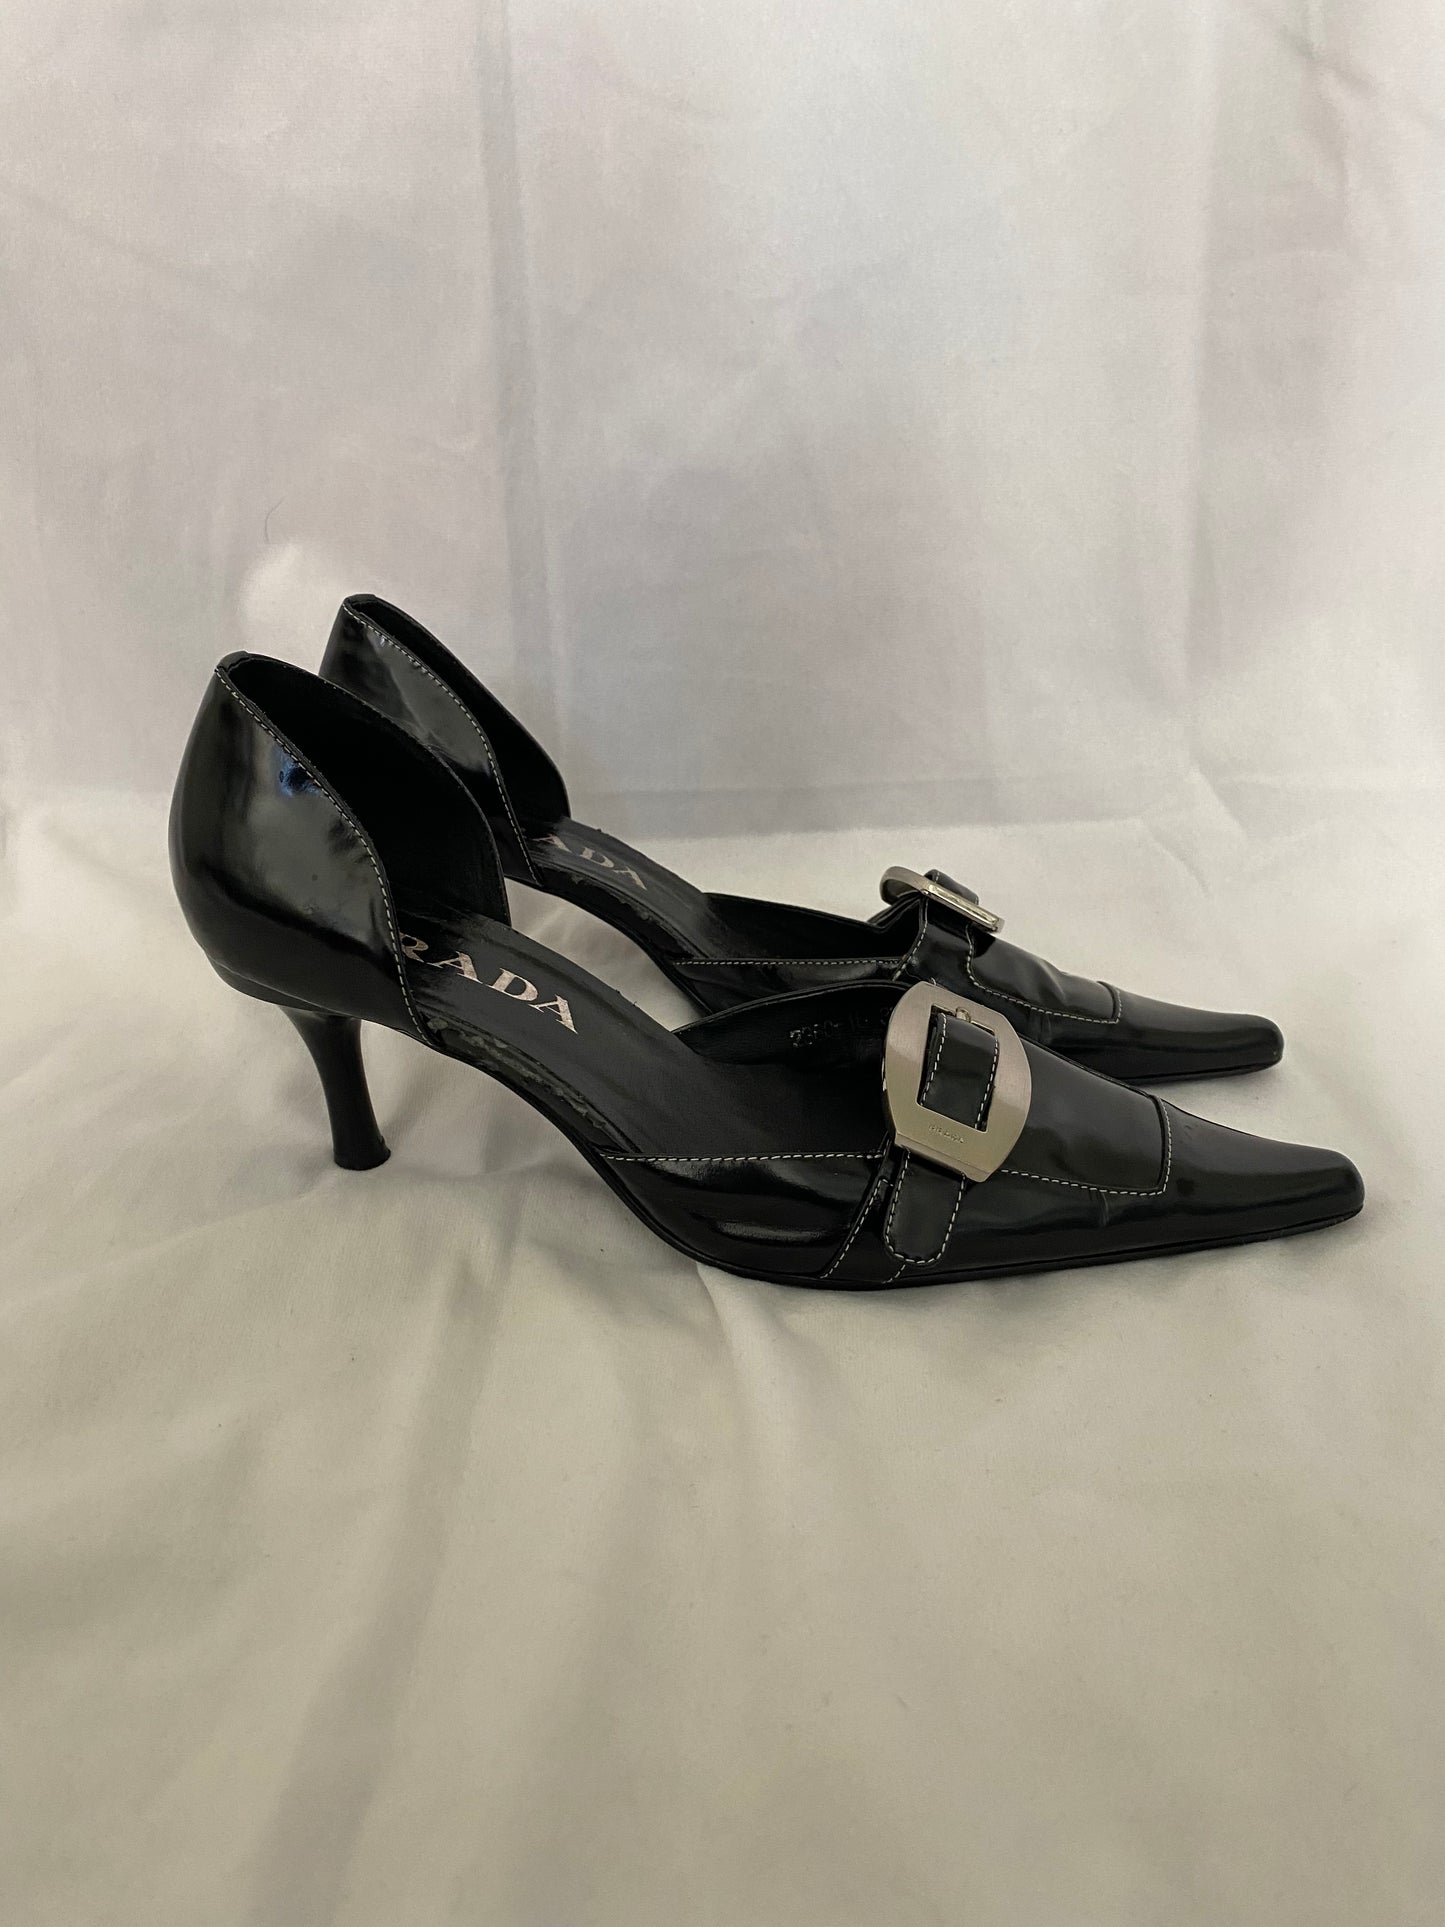 Vintage '90s Buckled Prada Heels